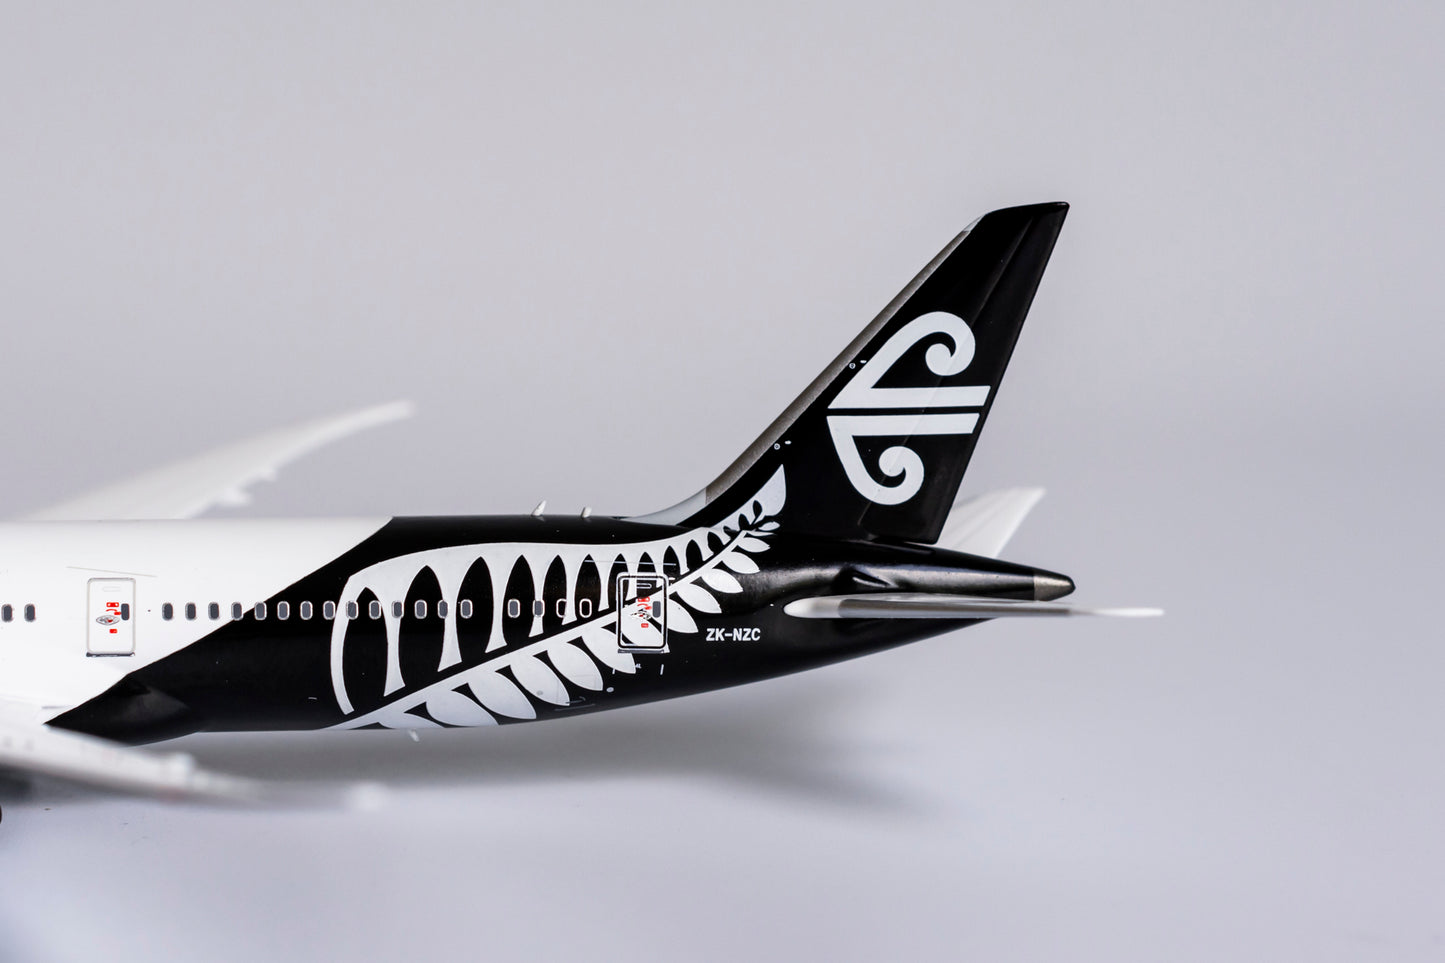 1:400 NG Models Air New Zealand Boeing 787-9 ZK-NZC NG55071